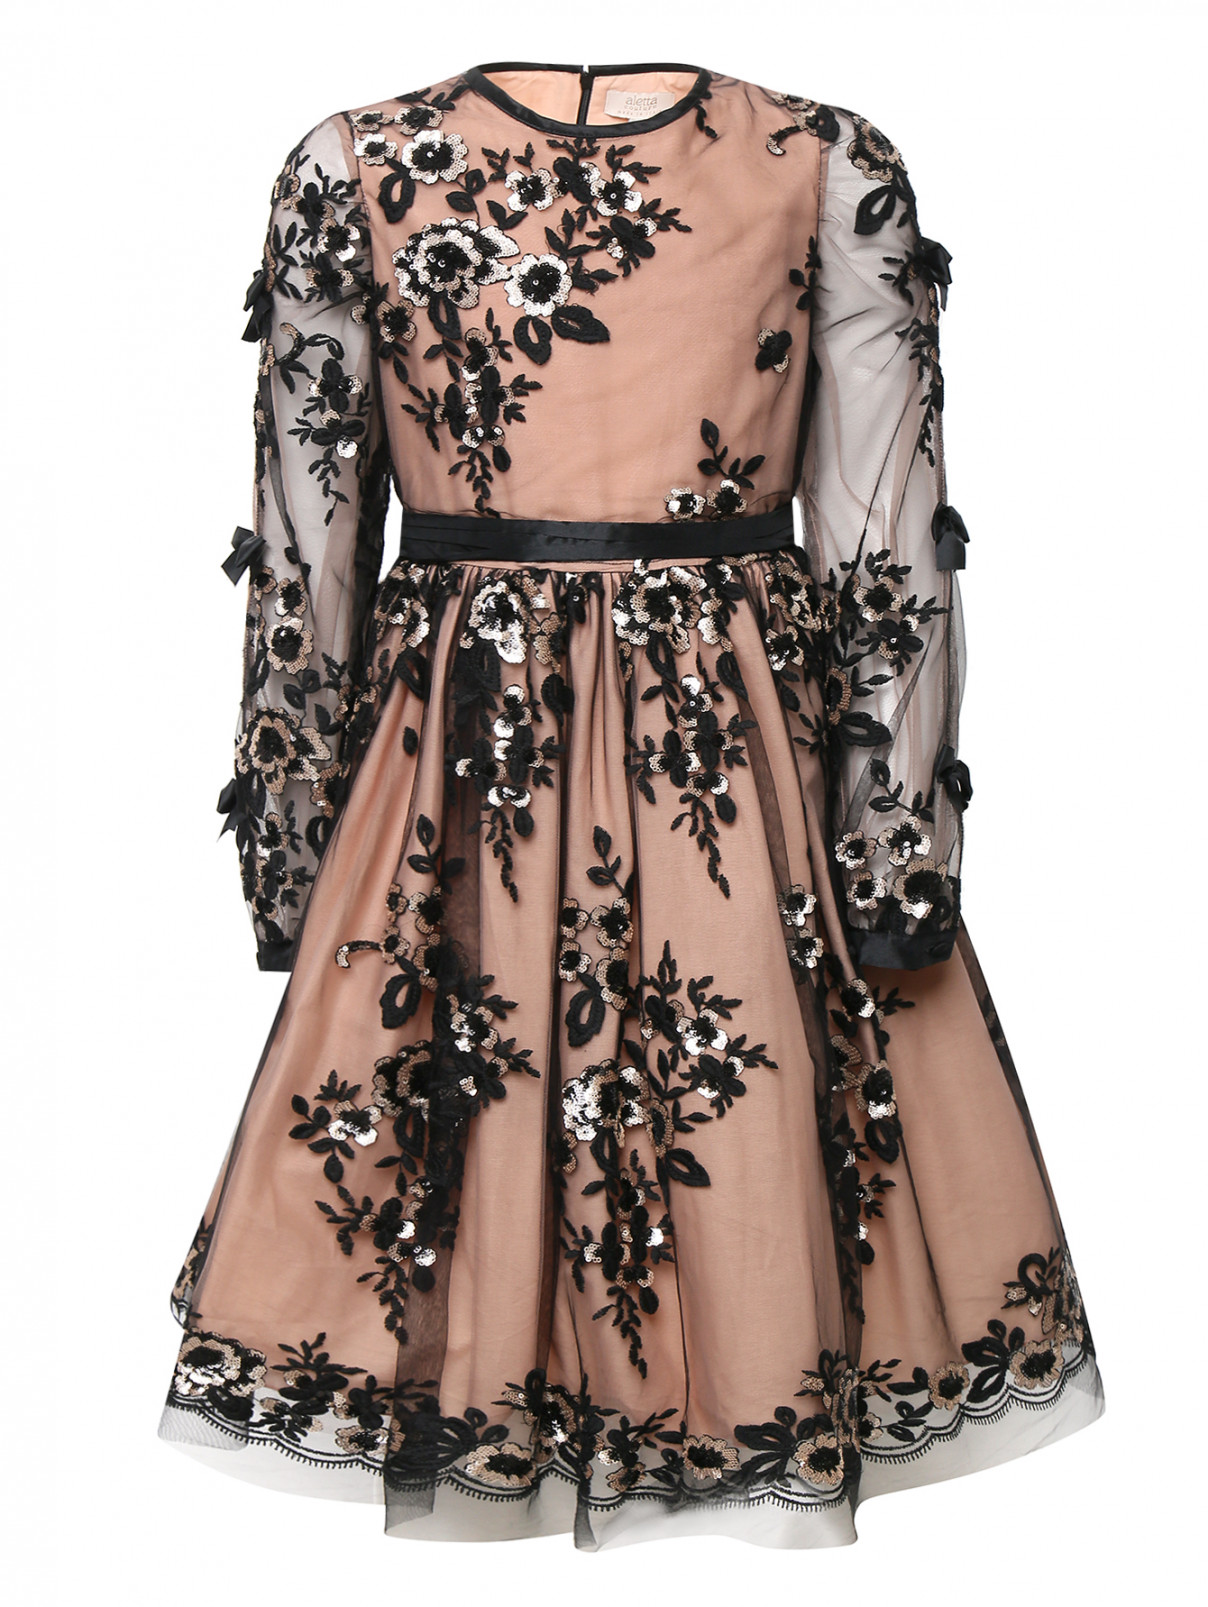 Платье с пышной юбкой расшитое паейтками Aletta  –  Общий вид  – Цвет:  Розовый